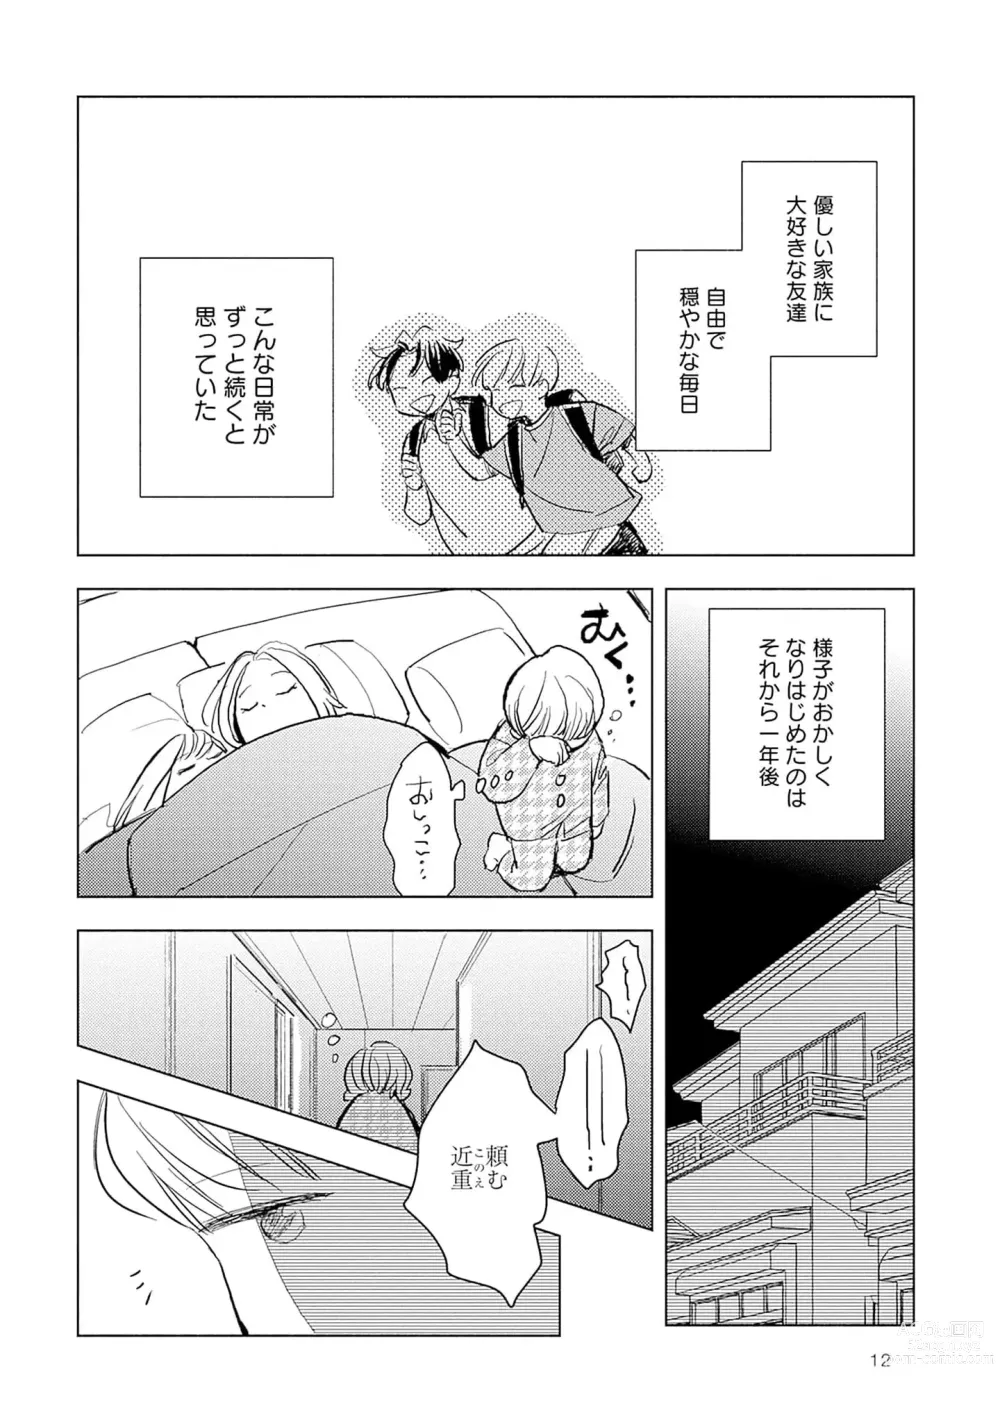 Page 14 of manga Strawberry na Days 2